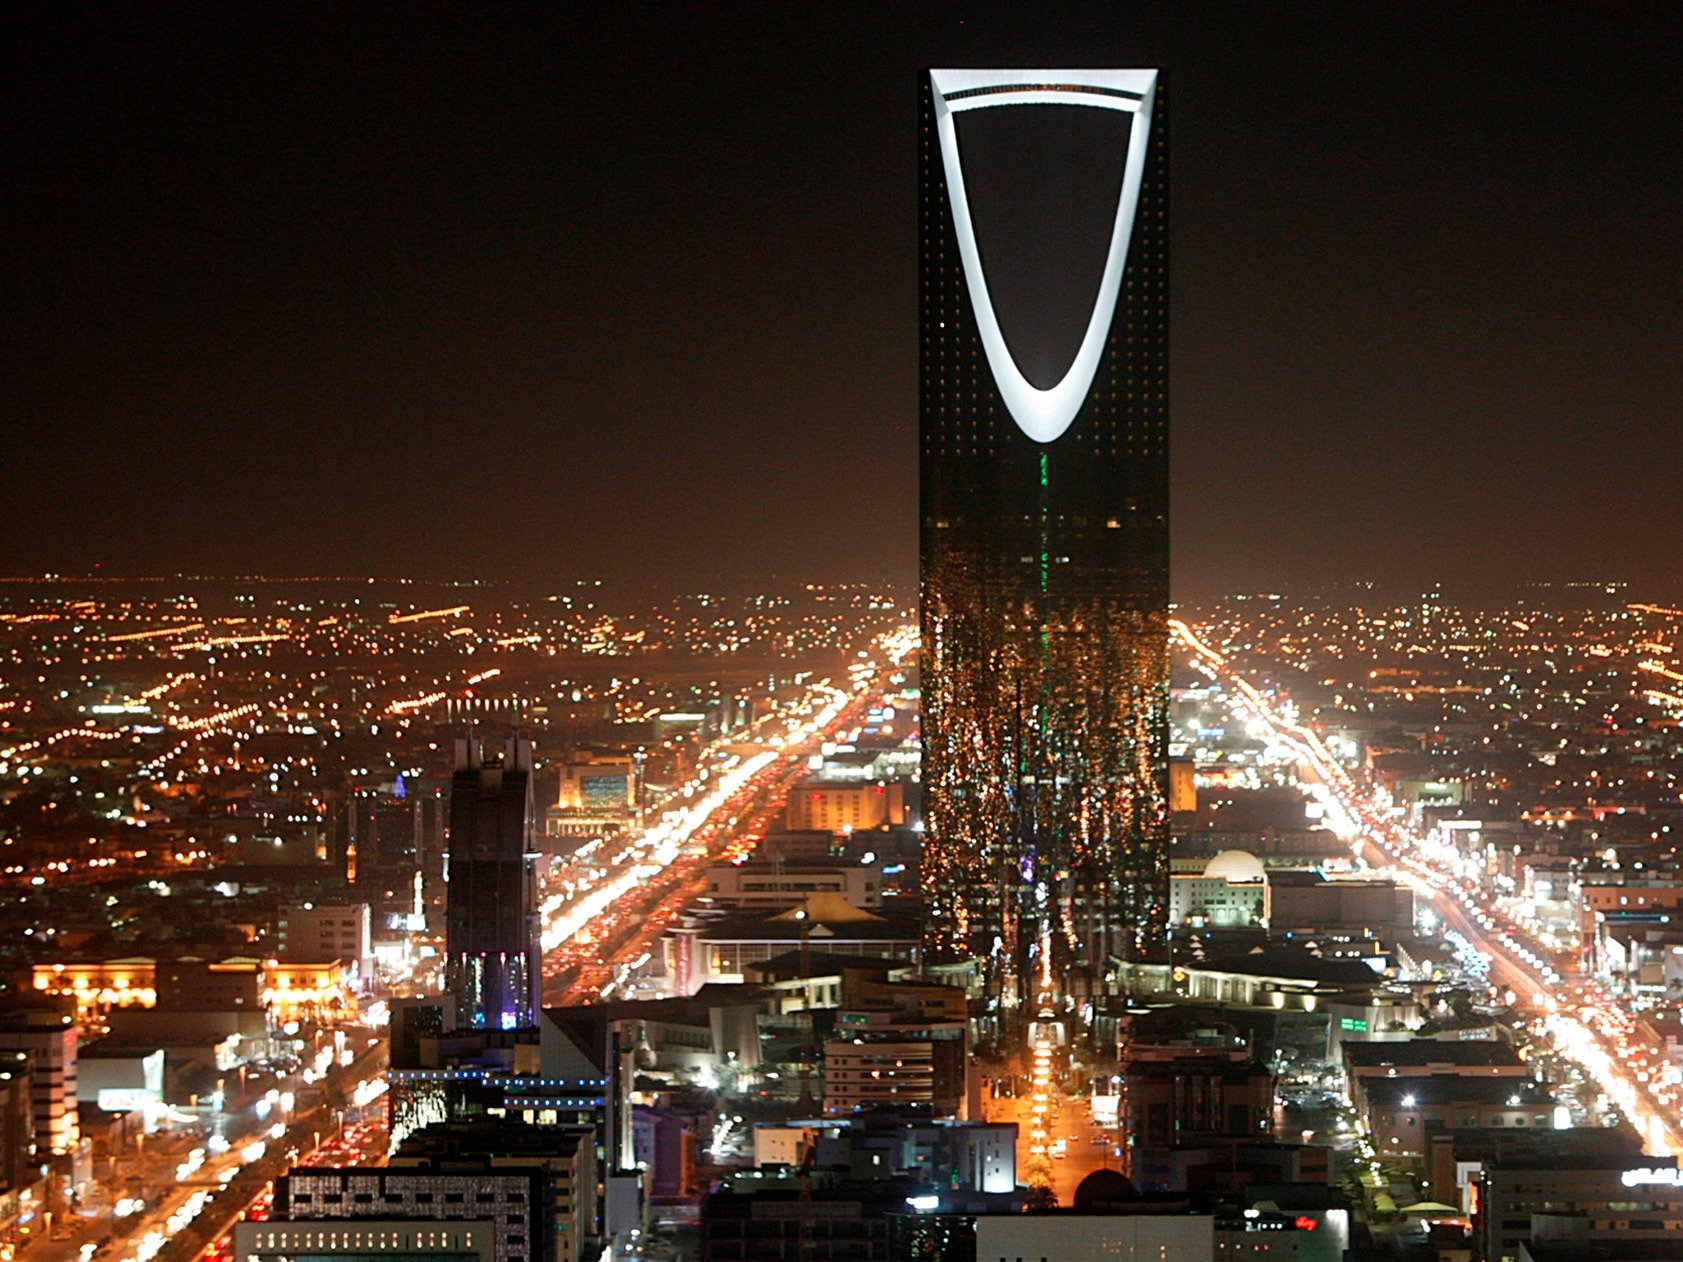 سعودی عرب کے مالی اثاثے پانچ سال میں ختم ہونے کا خدشہ